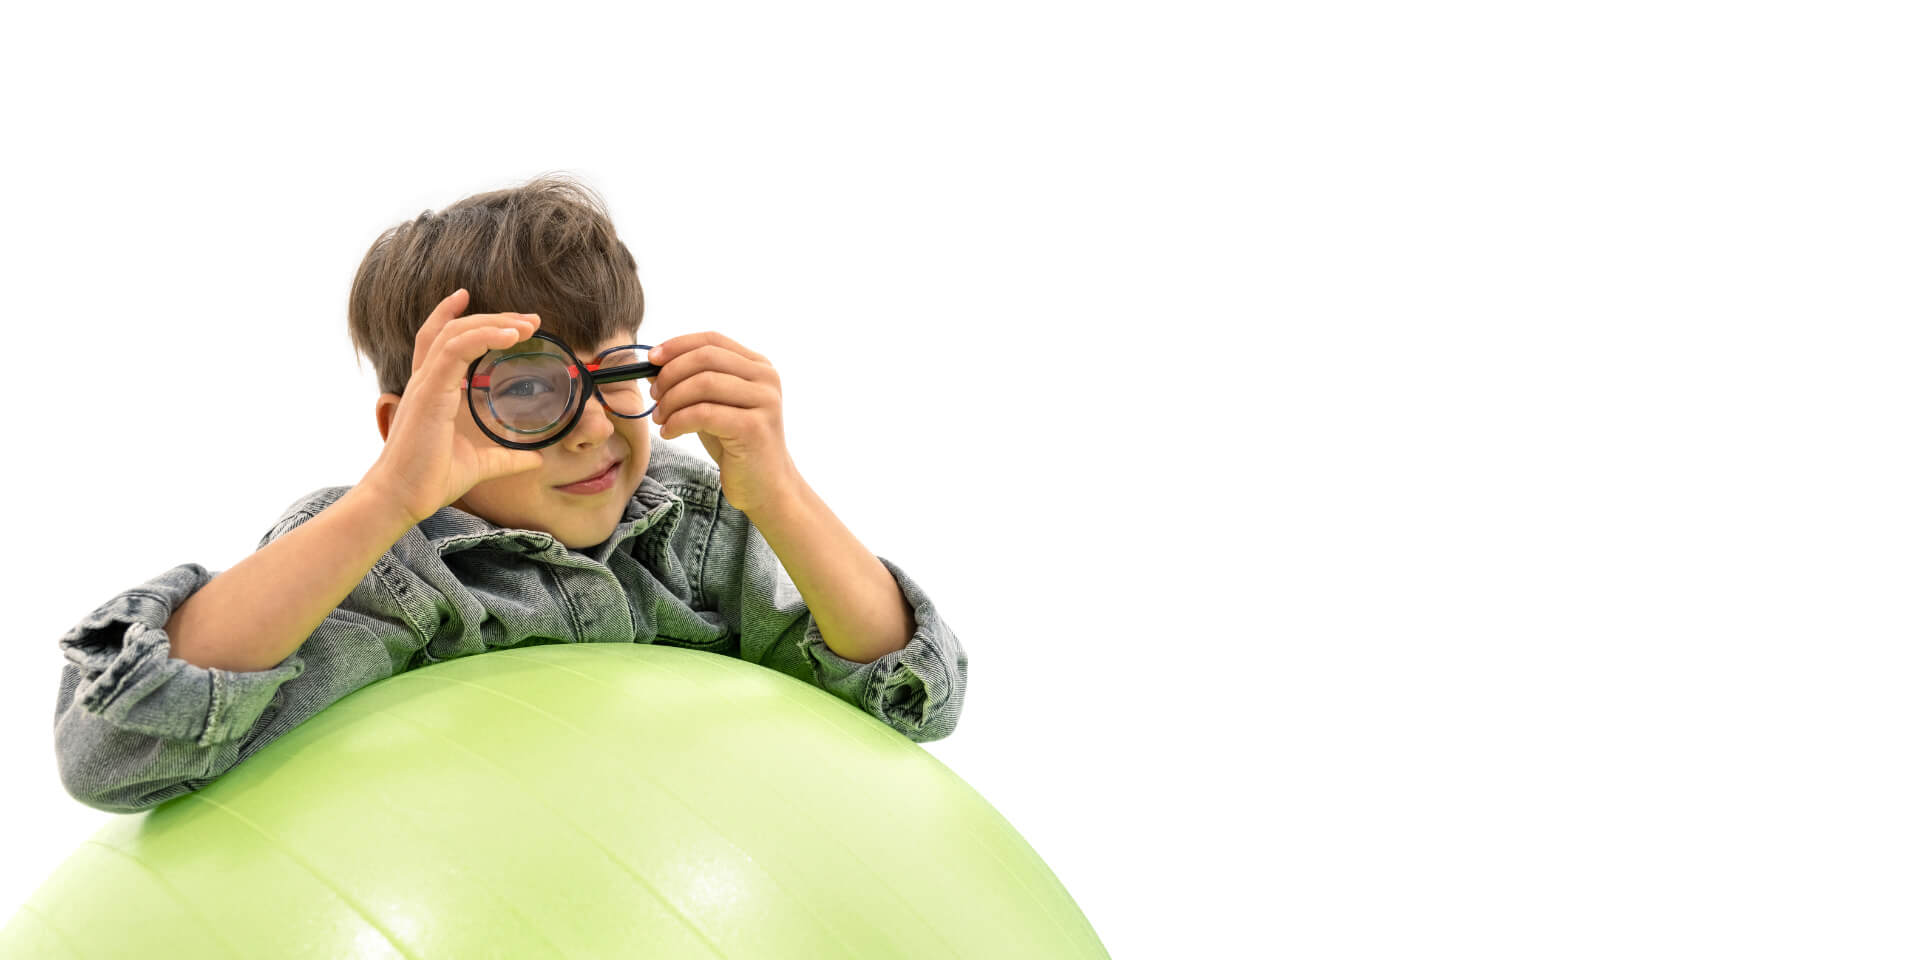 Menino usando lentes para gerenciamento da miopia, debruçado sobre uma bola de ginástica e segurando uma lupa na frente de um dos olhos.